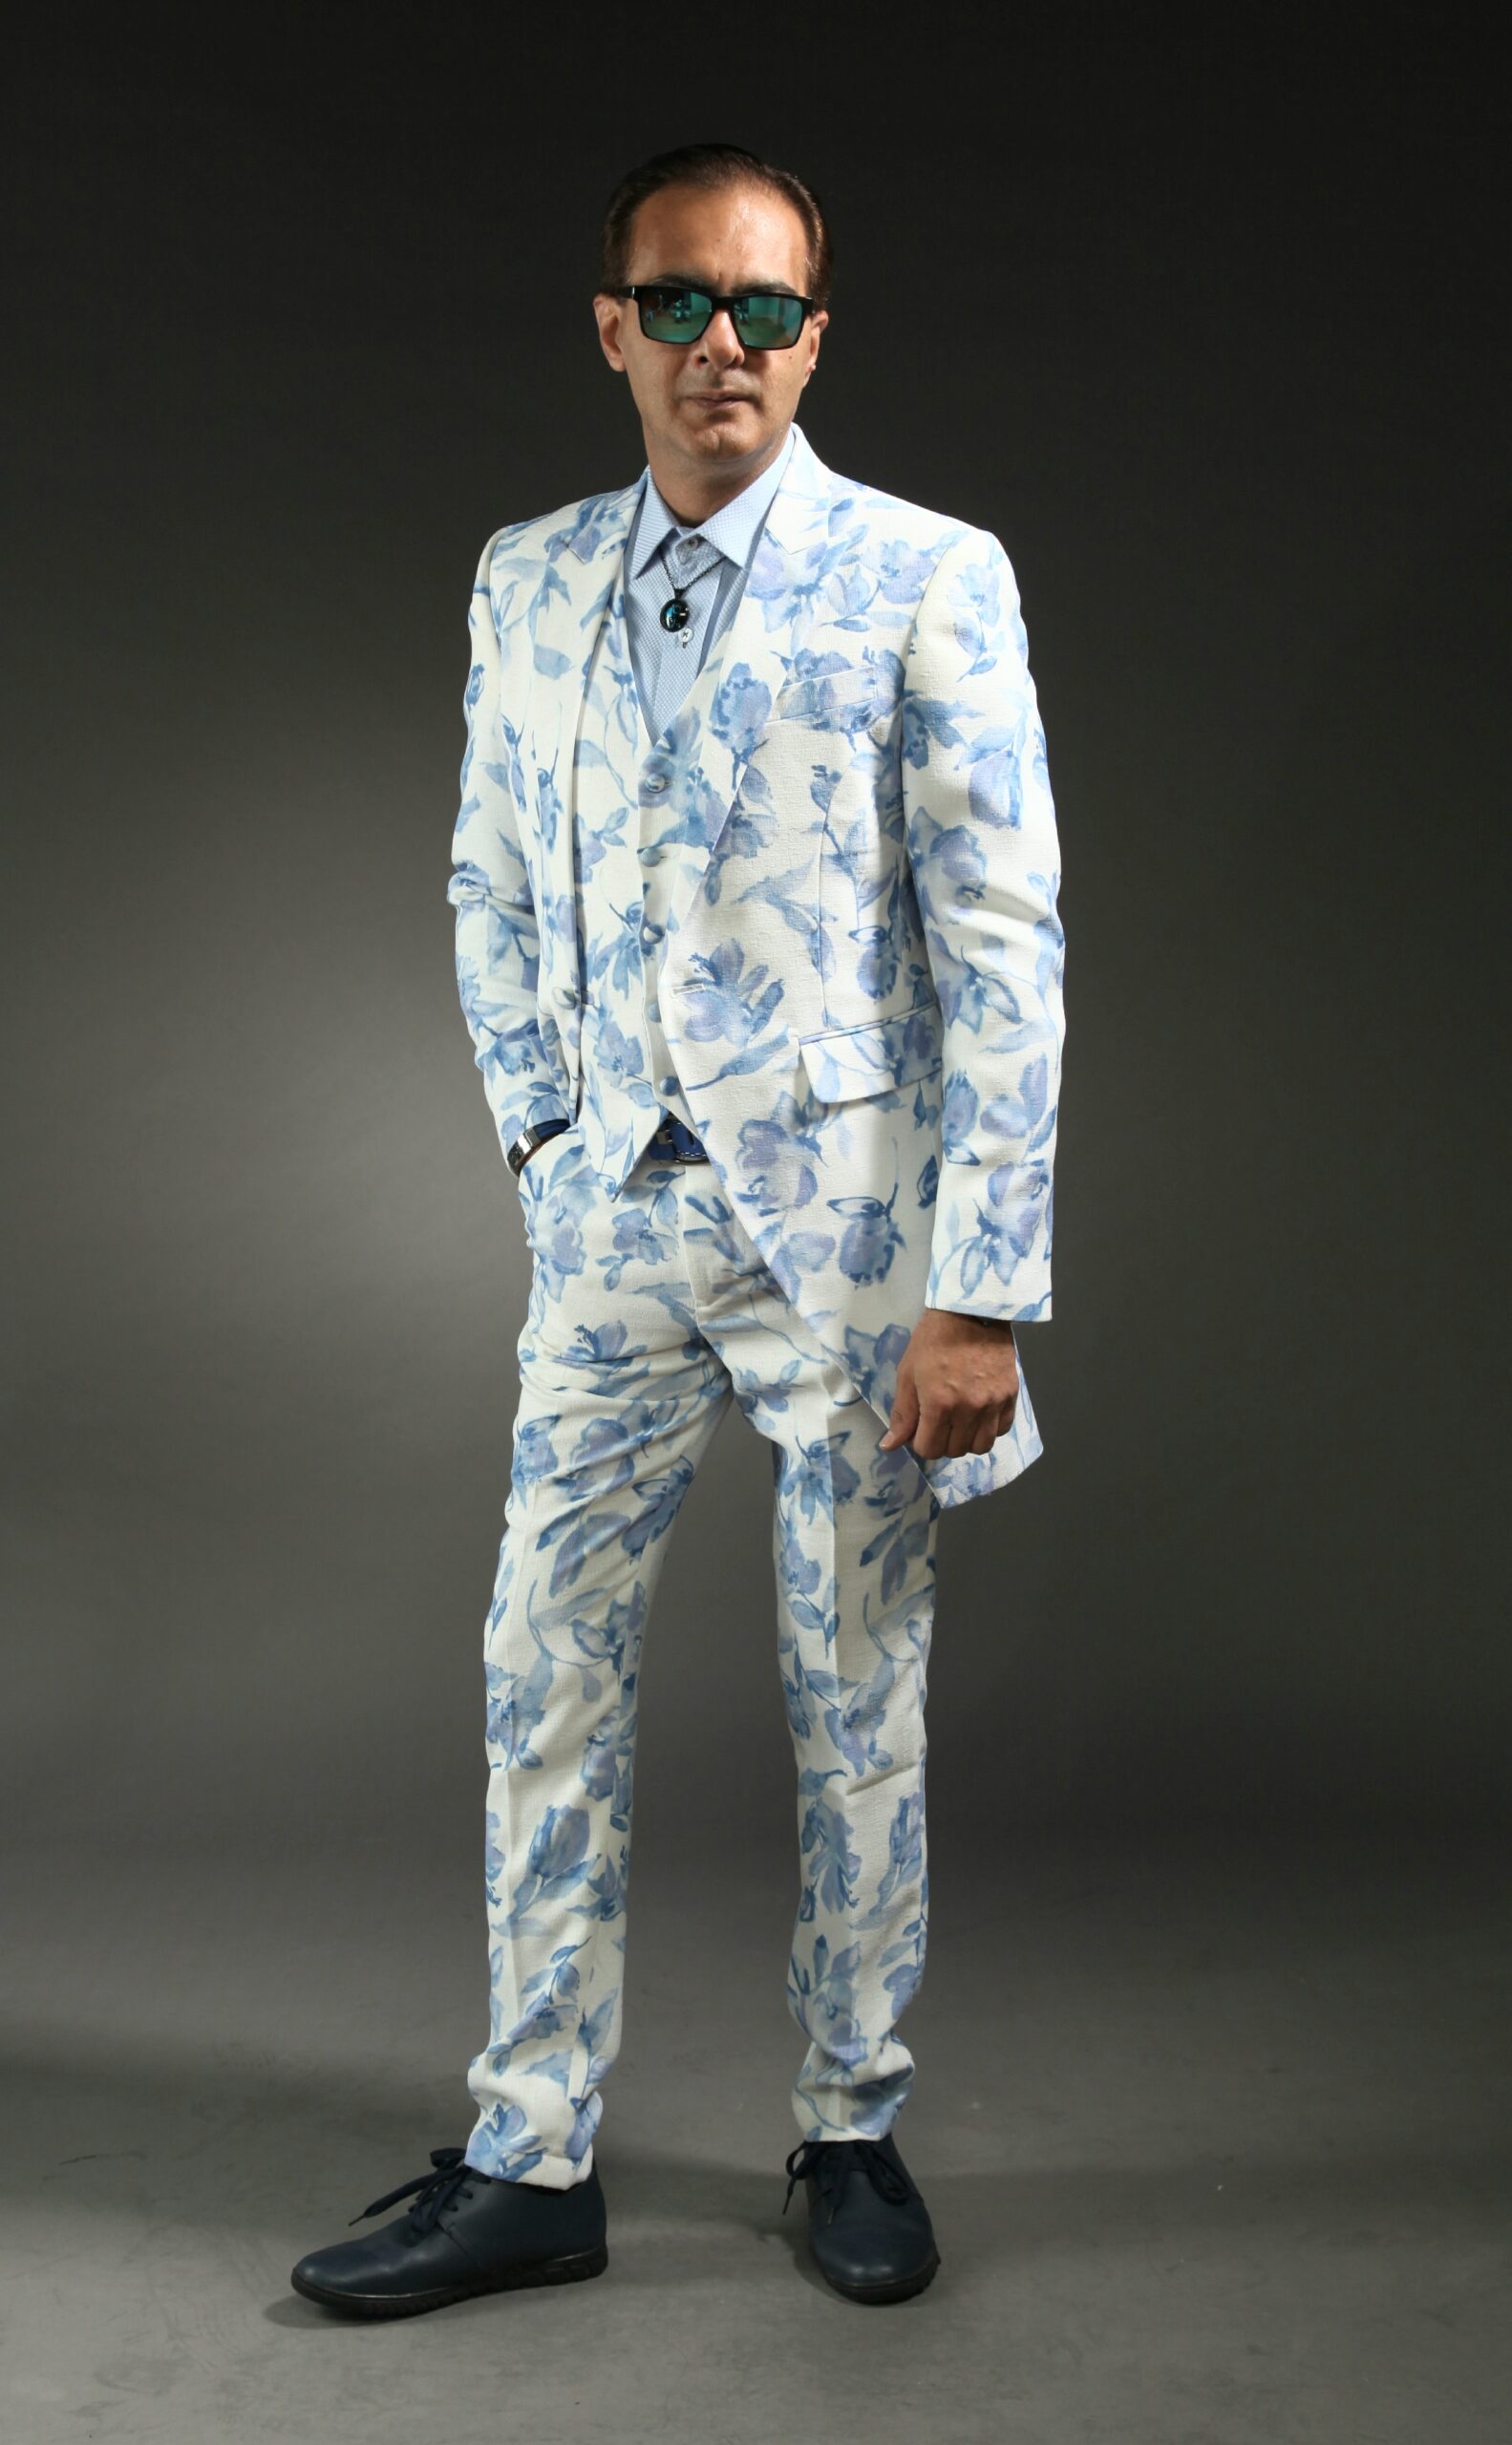 MST-5013-03-rent_rental_hire_tuxedo_suit_black_tie_suit_designer_suits_shop_tailor_tailors_singapore_wedding